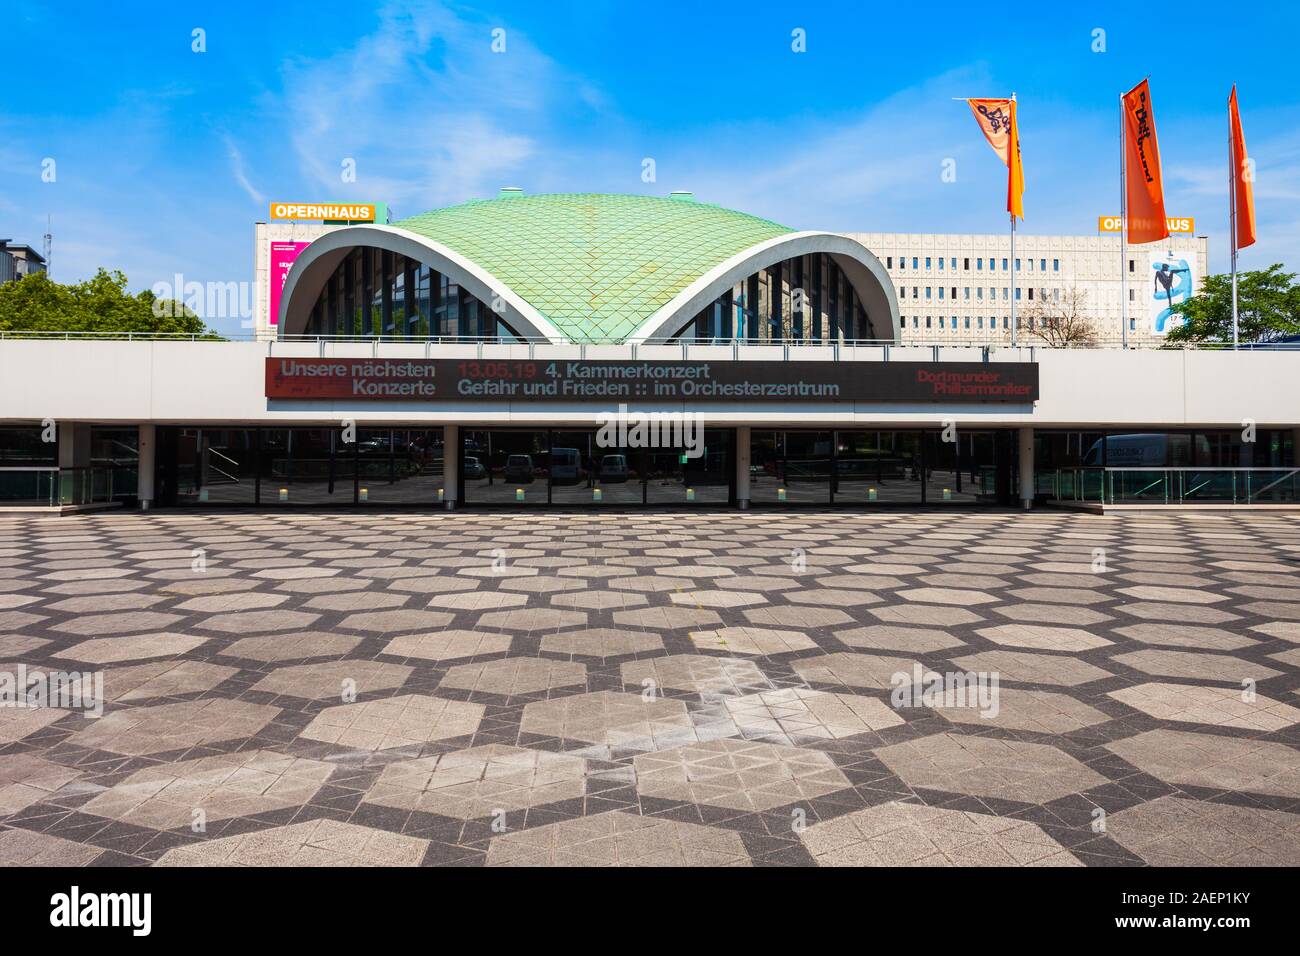 DORTMUND, Deutschland - Juli 04, 2018: Dortmund Opernhaus ist ein Opernhaus im Zentrum der Stadt Dortmund, Deutschland Stockfoto